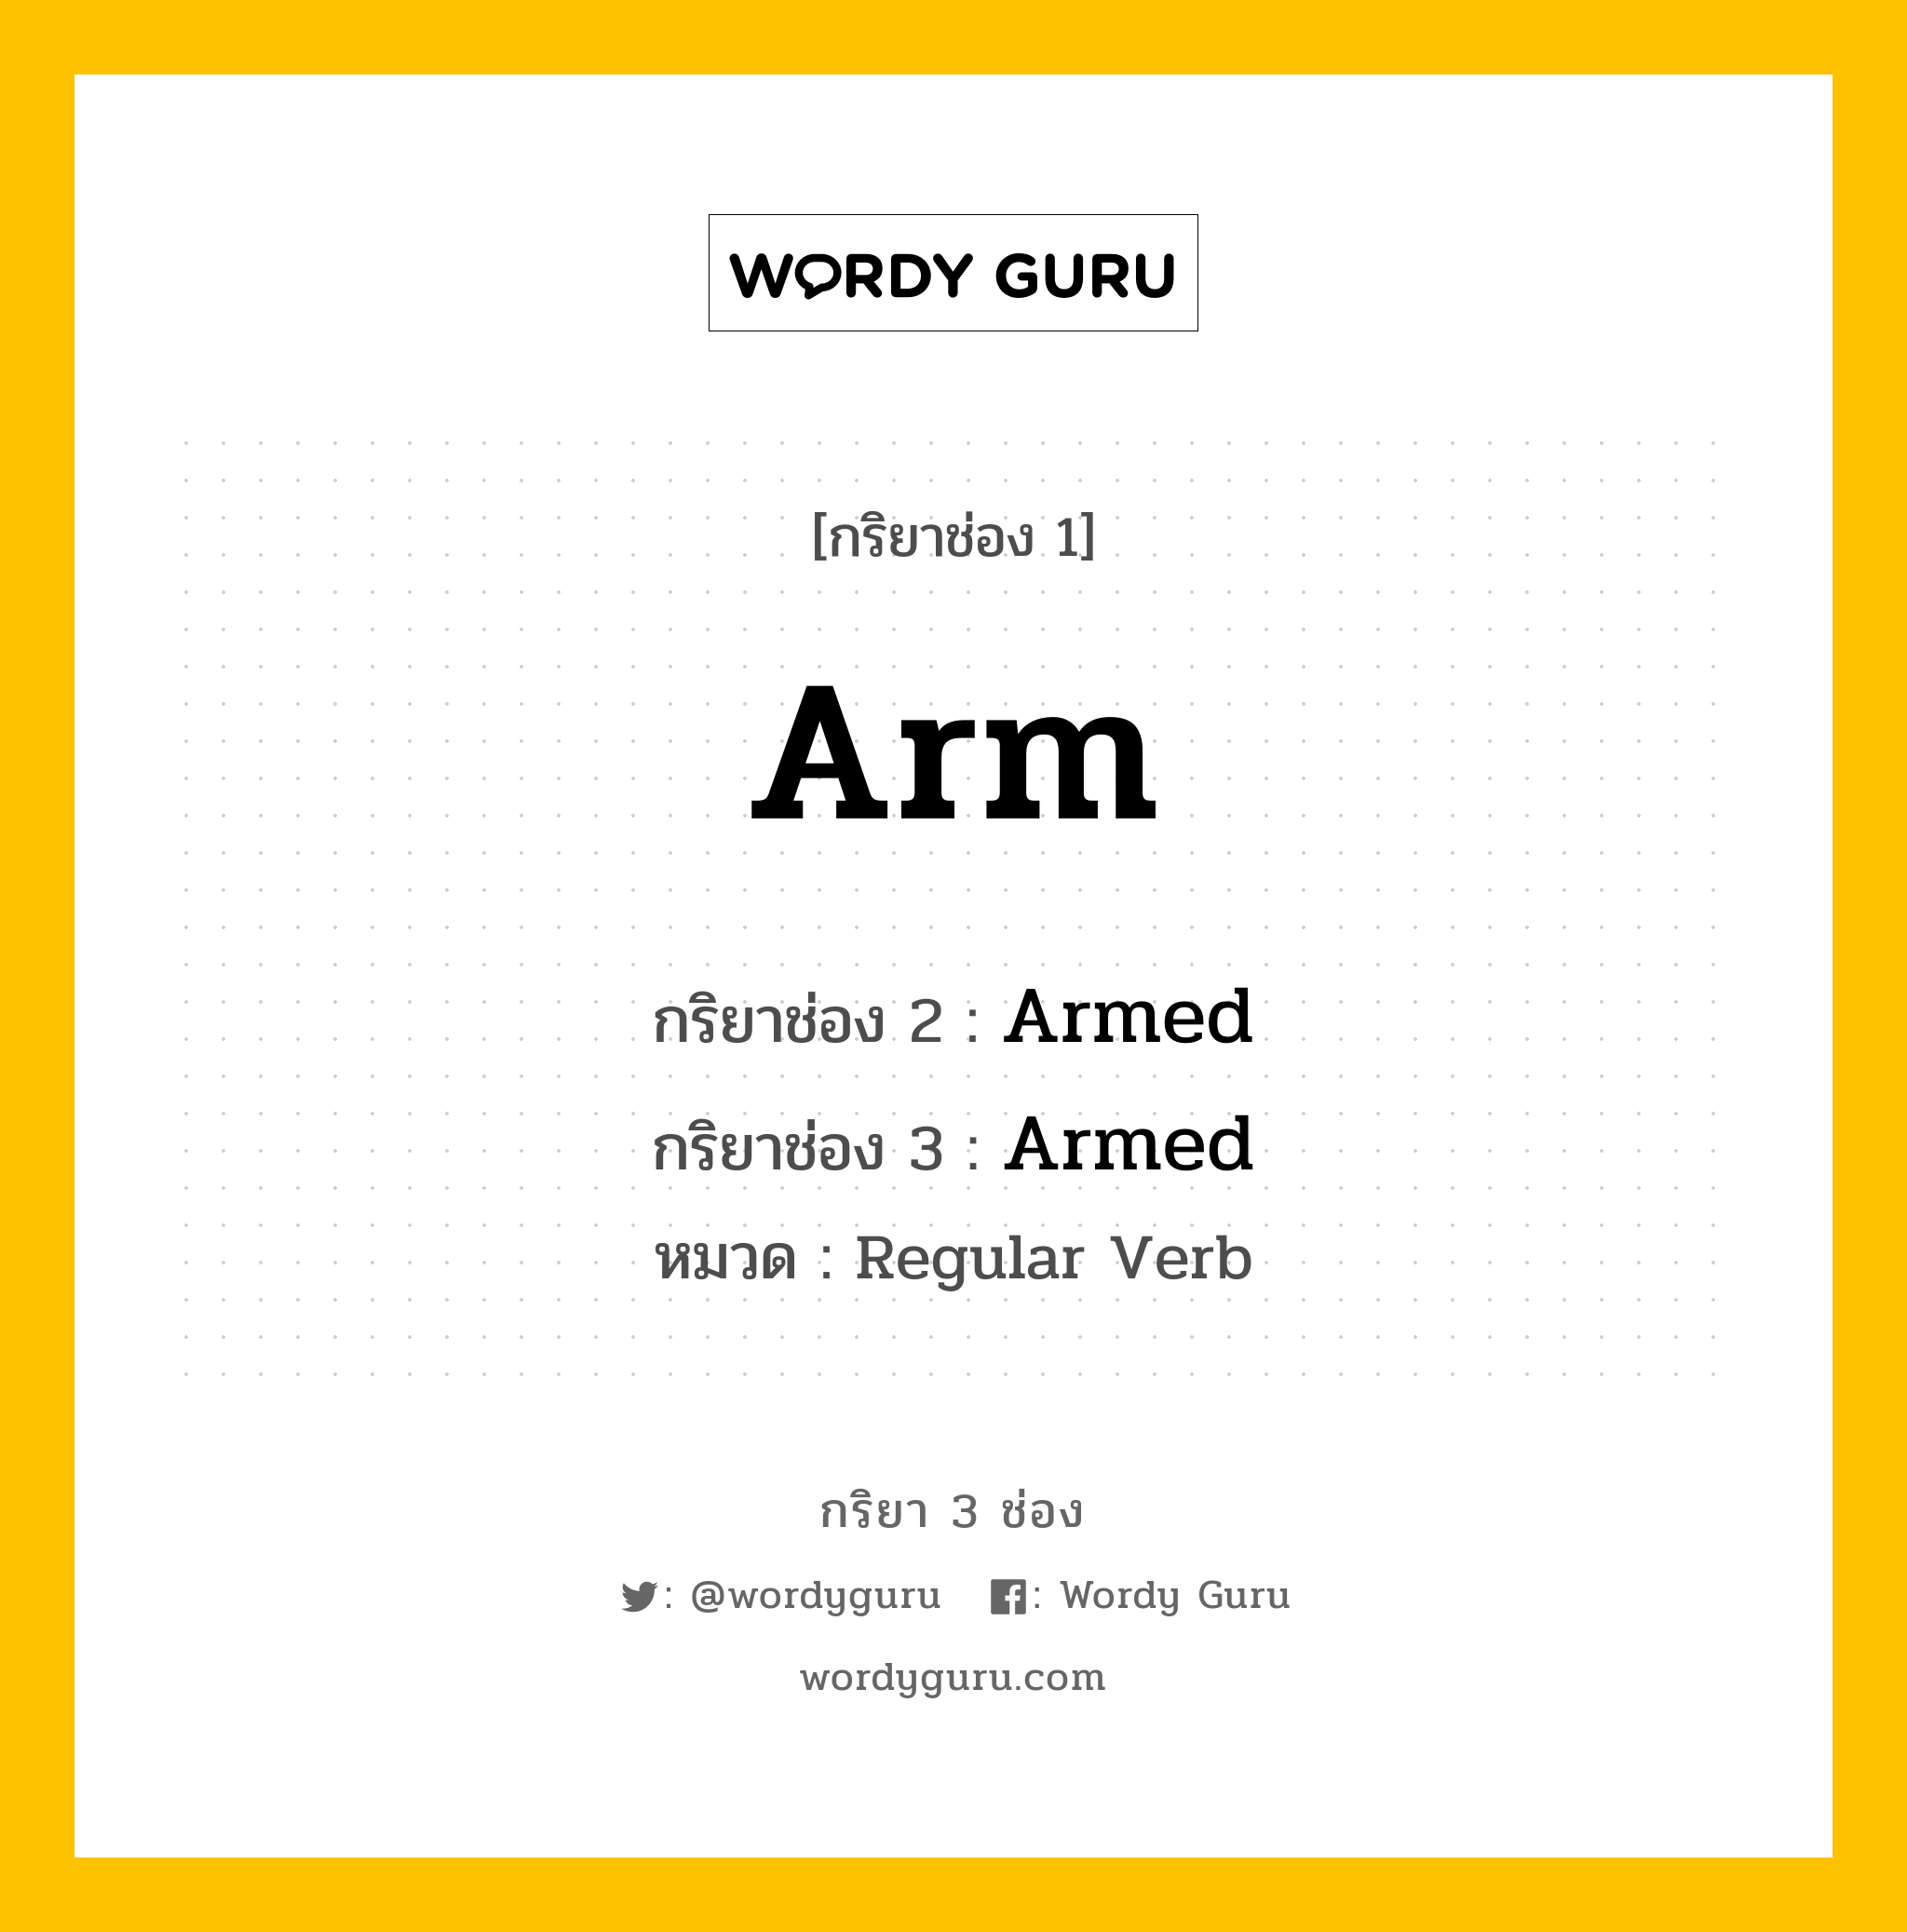 กริยา 3 ช่อง: Arm ช่อง 2 Arm ช่อง 3 คืออะไร, กริยาช่อง 1 Arm กริยาช่อง 2 Armed กริยาช่อง 3 Armed หมวด Regular Verb หมวด Regular Verb